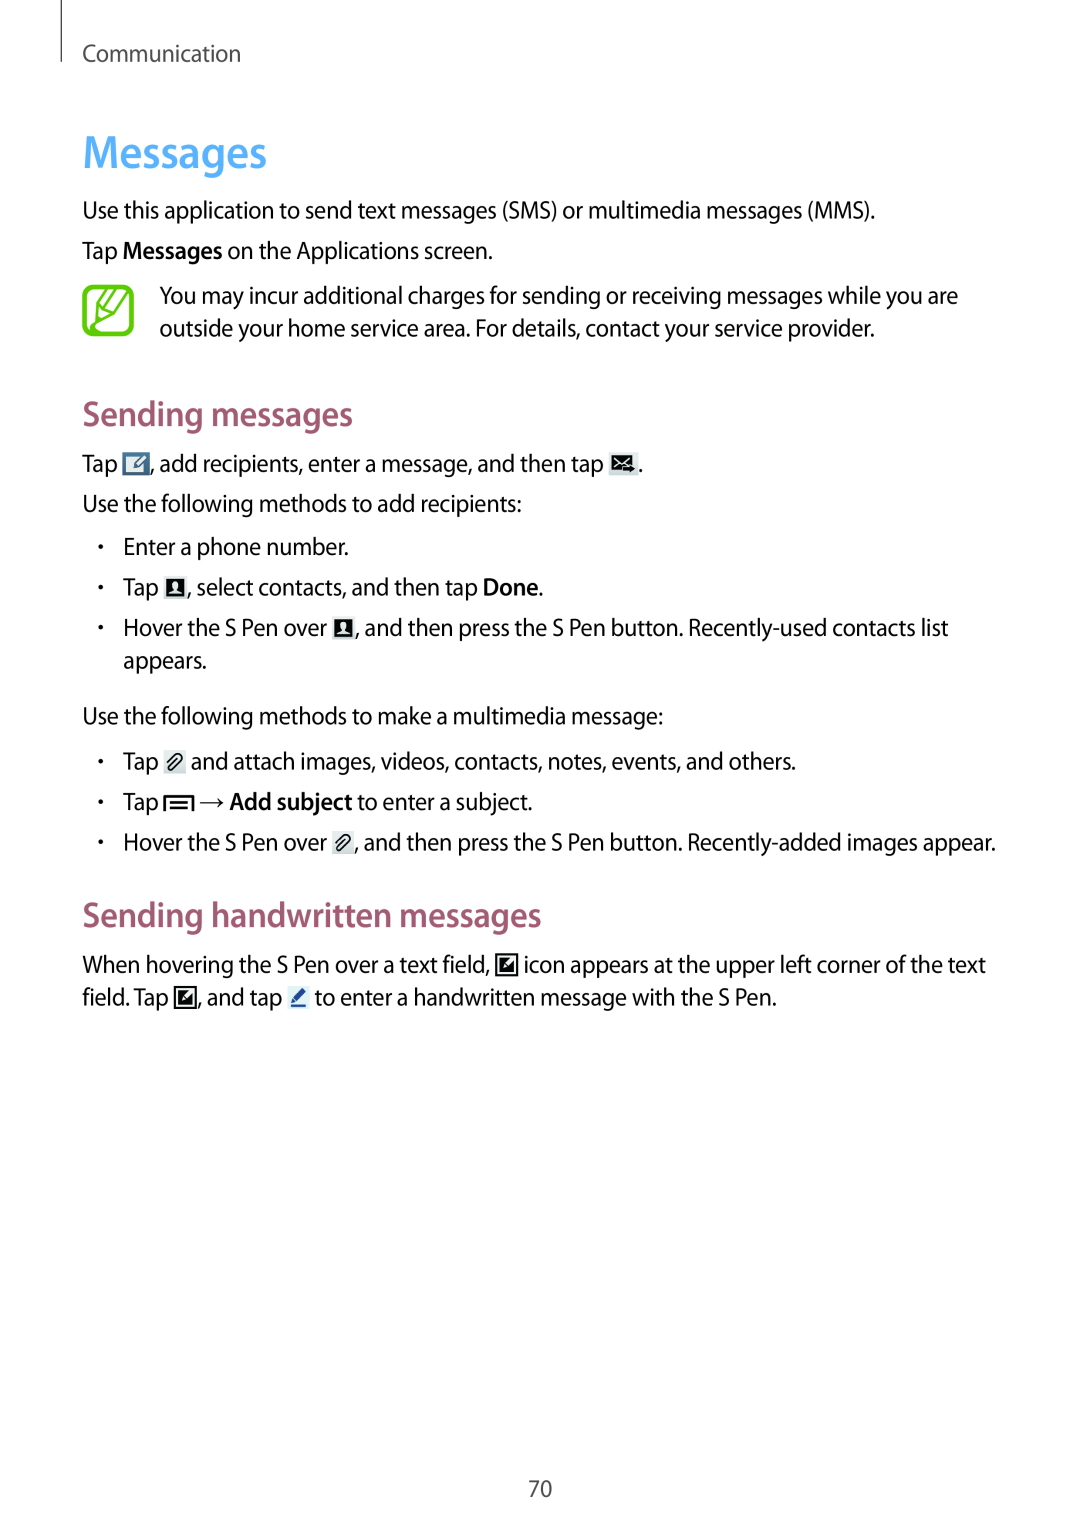 Samsung SM-N9005ZIEKSA, SM-N9005ZKEEGY manual Messages, Sending messages, Sending handwritten messages, Communication 